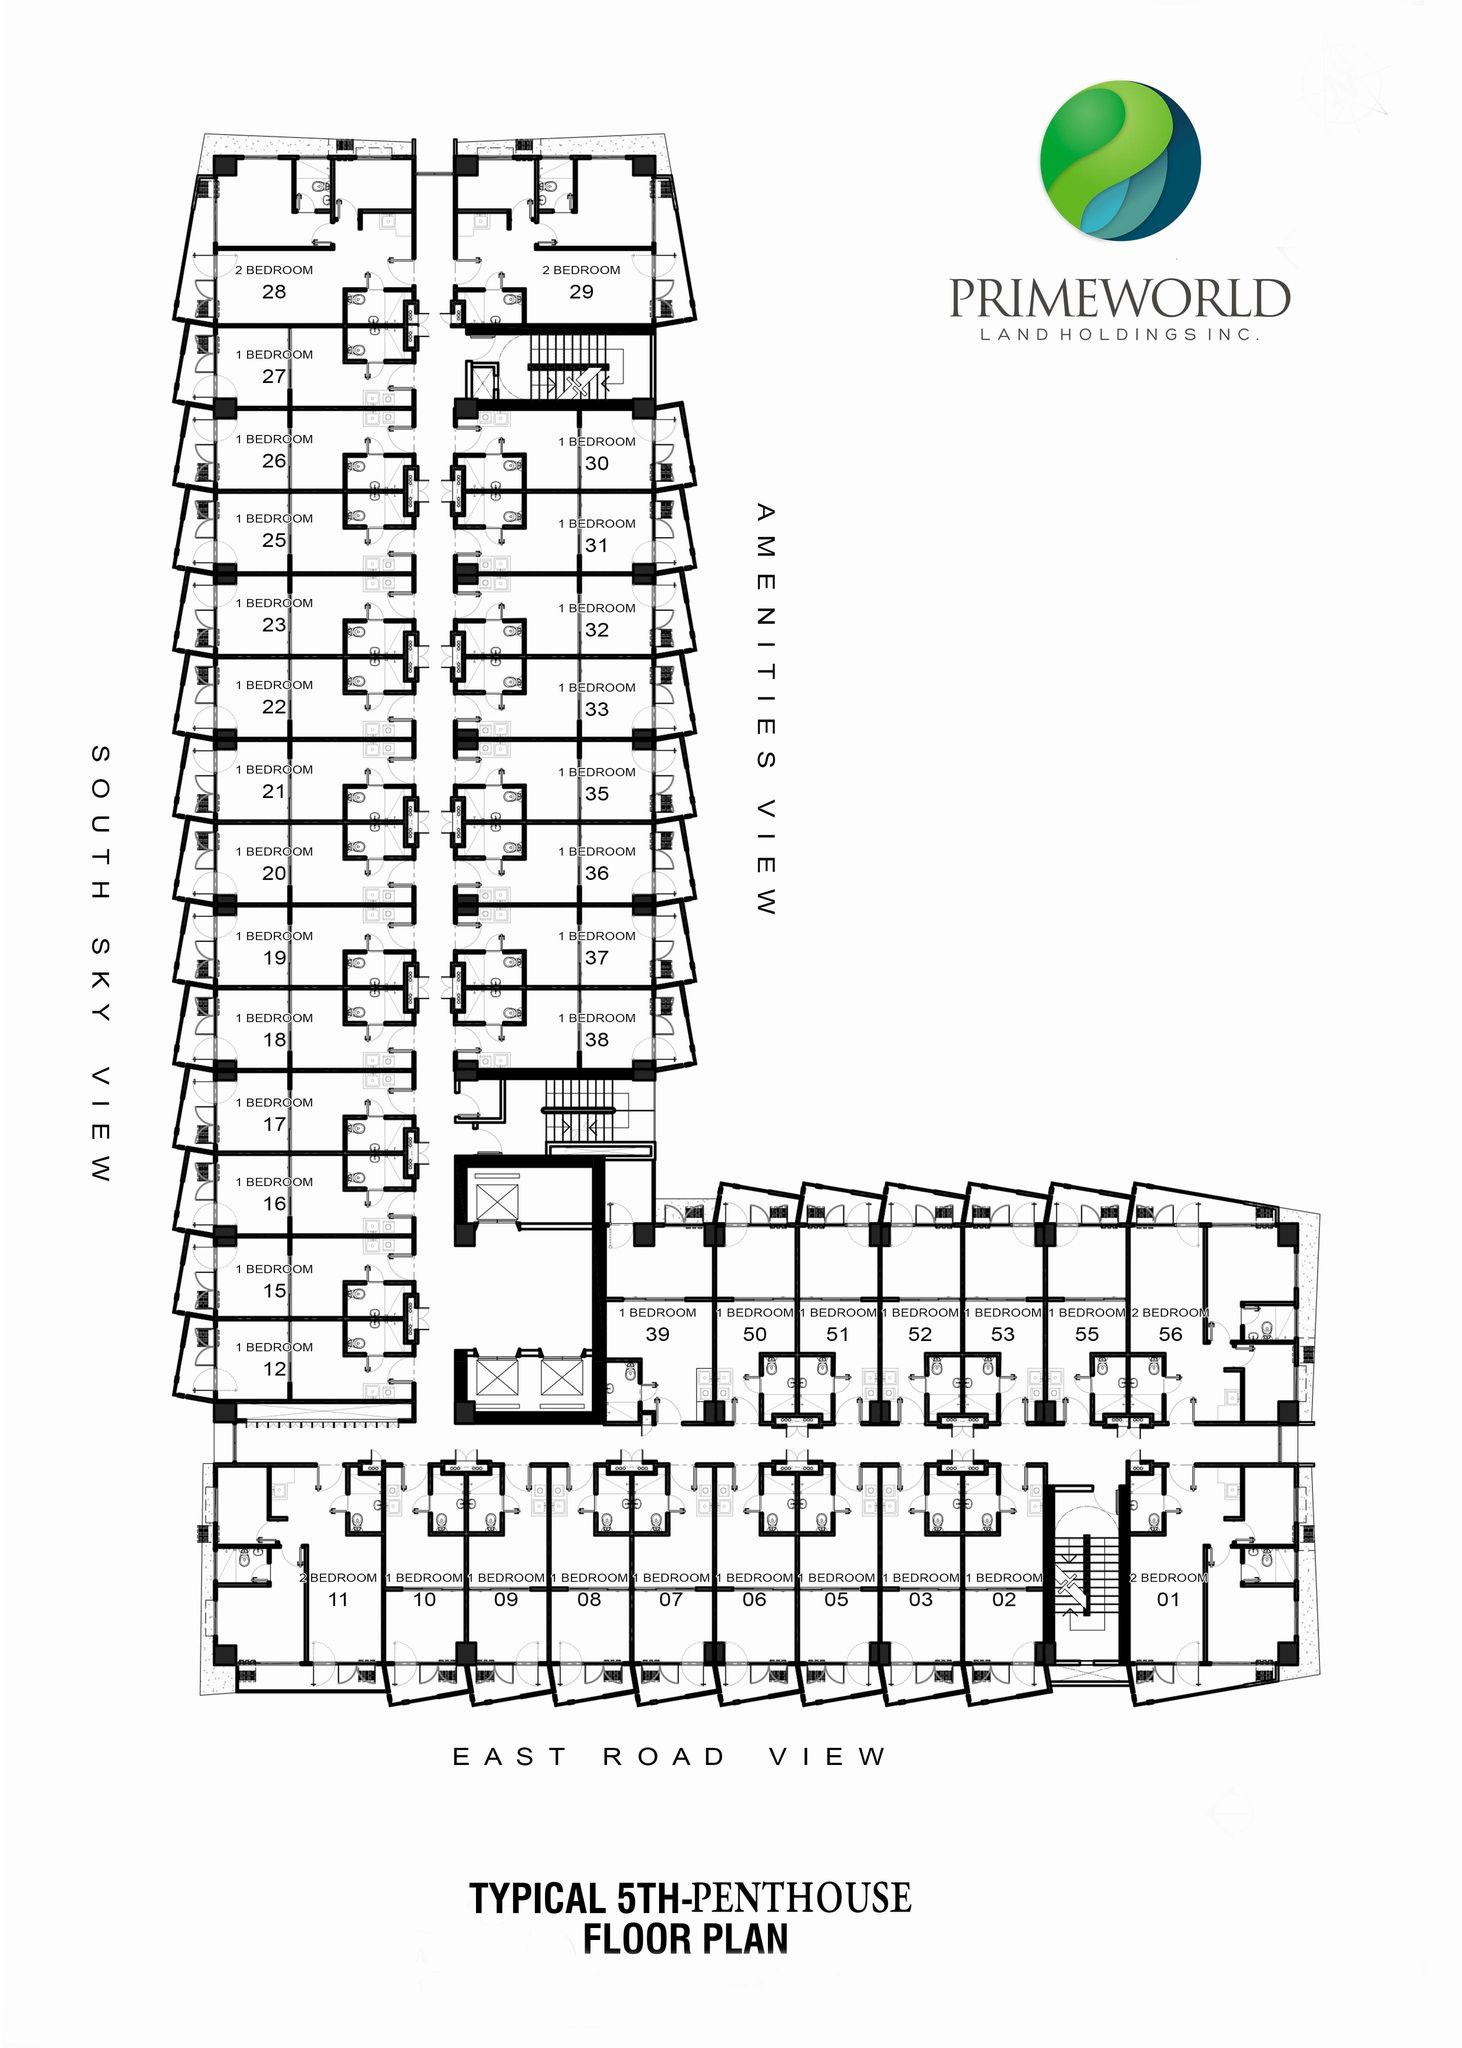 primeworld district building floor plan, rent to own condo in lapu lapu